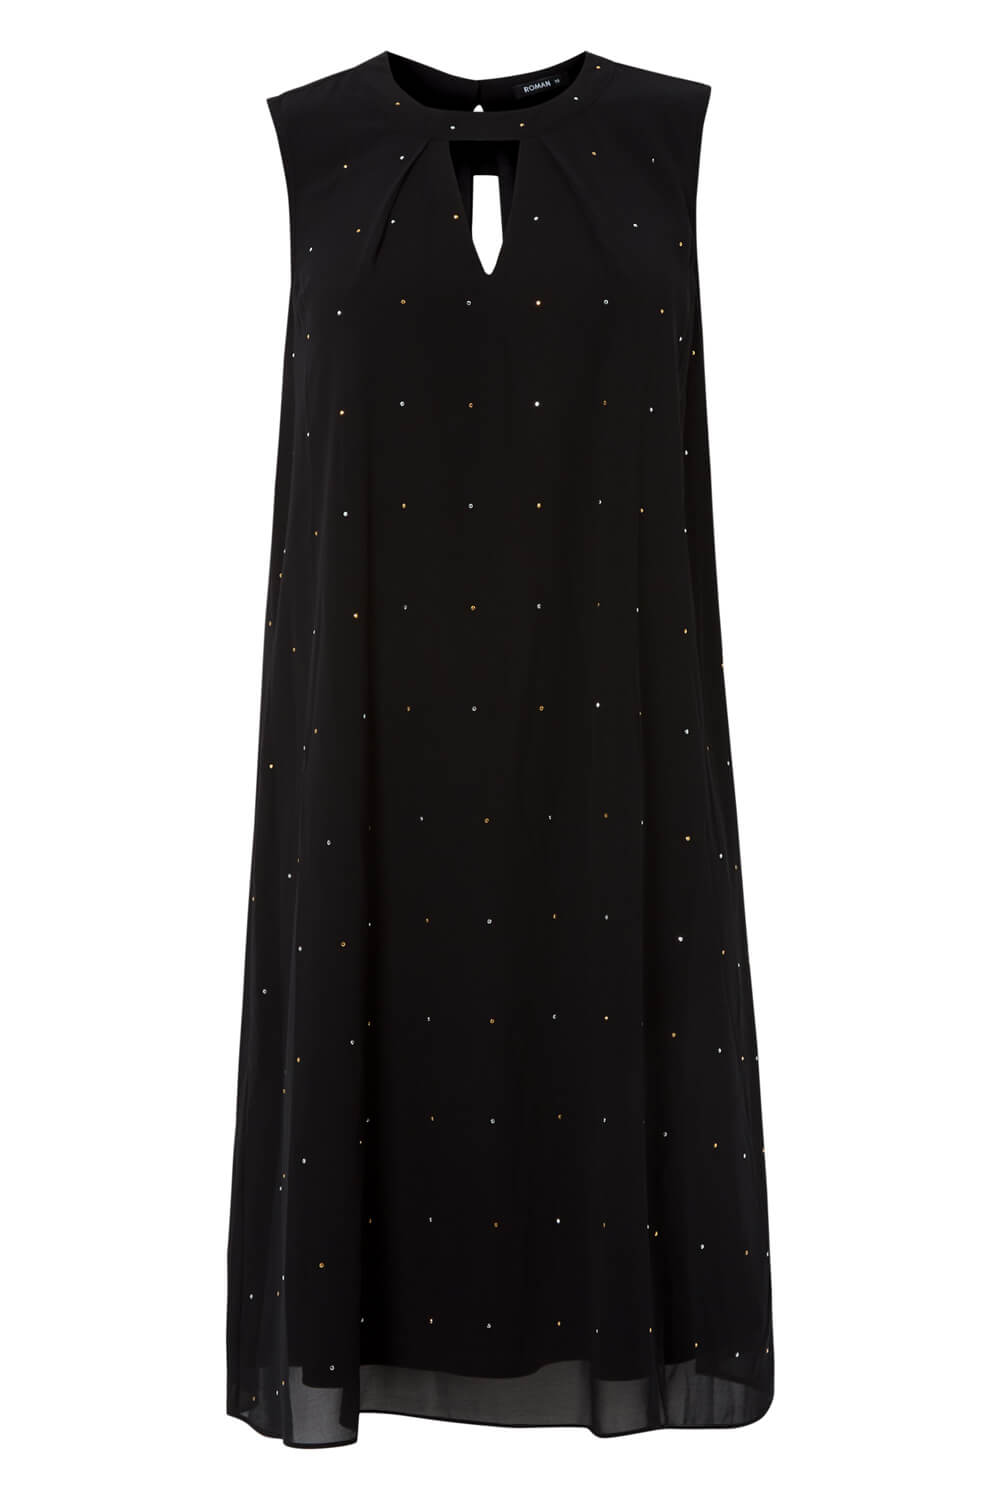 Black Embellished Keyhole Swing Dress, Image 4 of 4